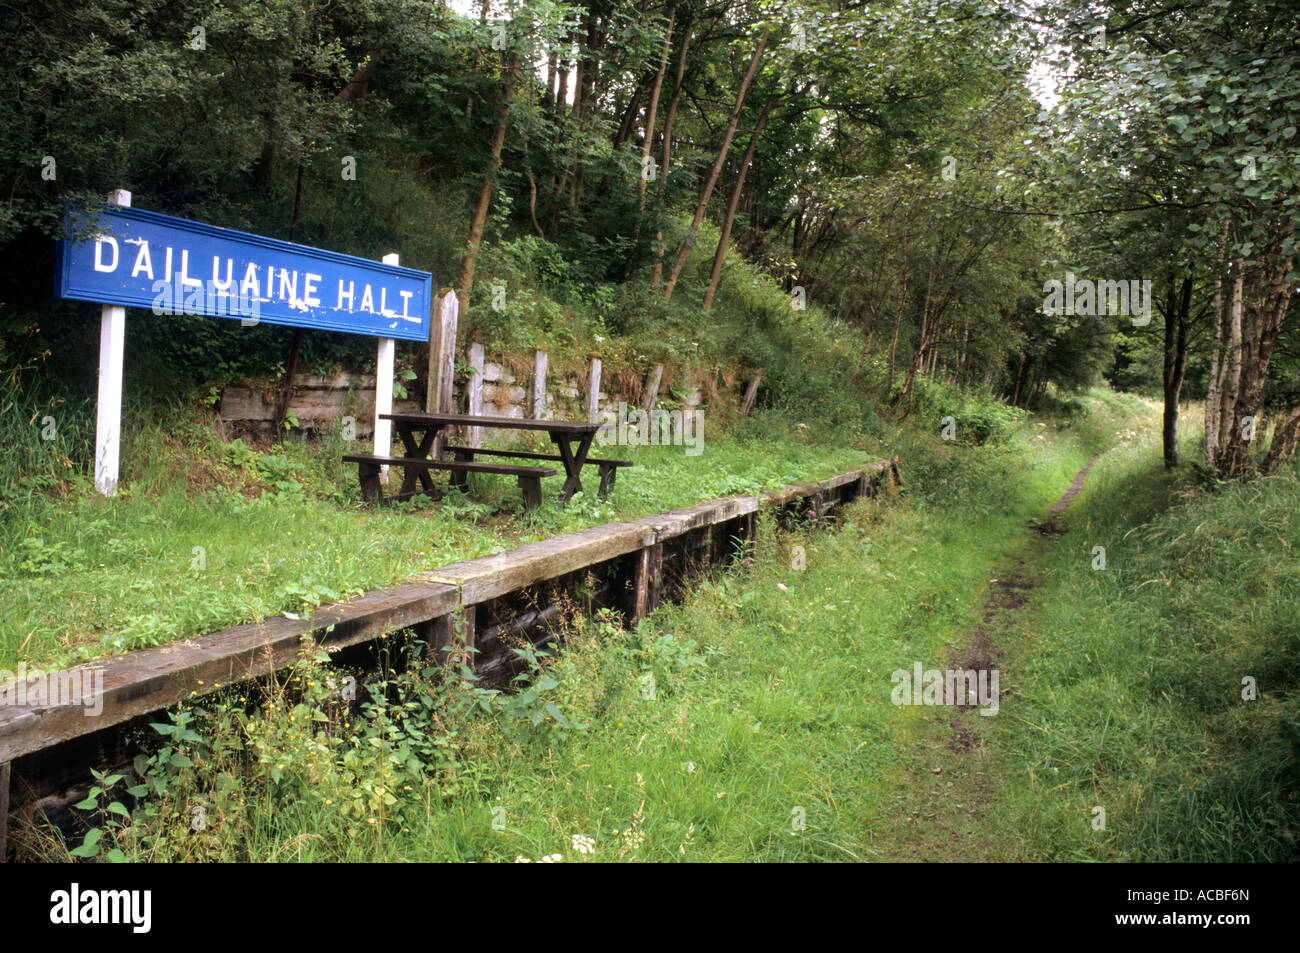 Piattaforma ferroviaria, abbandonate in disuso, ricoperta, Dailuaine Halt, Grampian Regione, Scozia, Regno Unito, Scottish Railways station Foto Stock